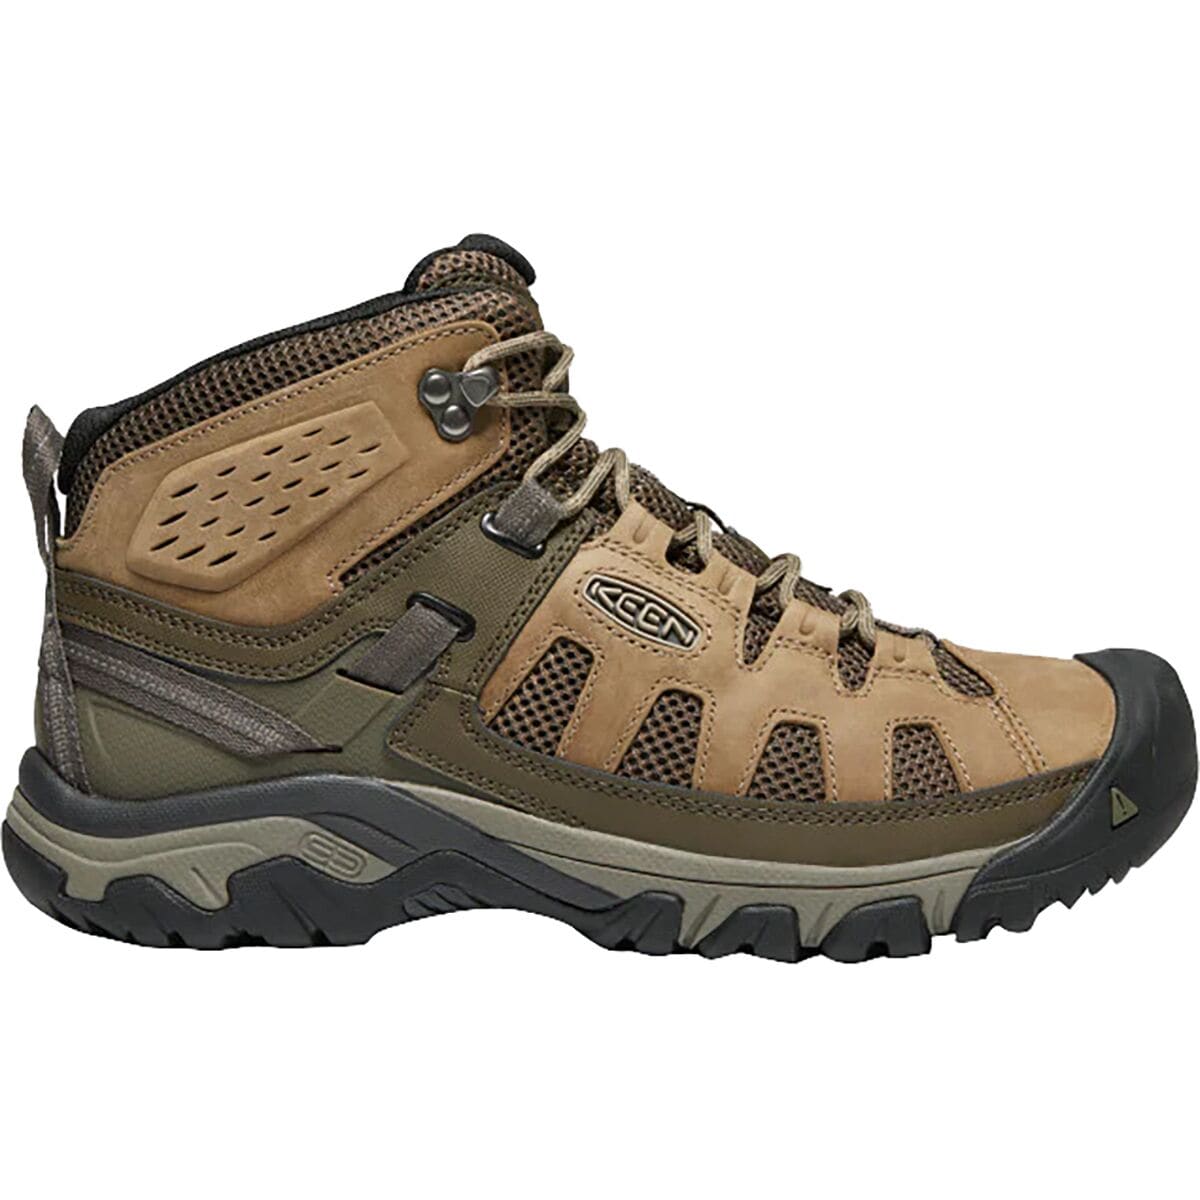 KEEN Targhee Vent Mid Hiking Boot - Men's -  191190109540